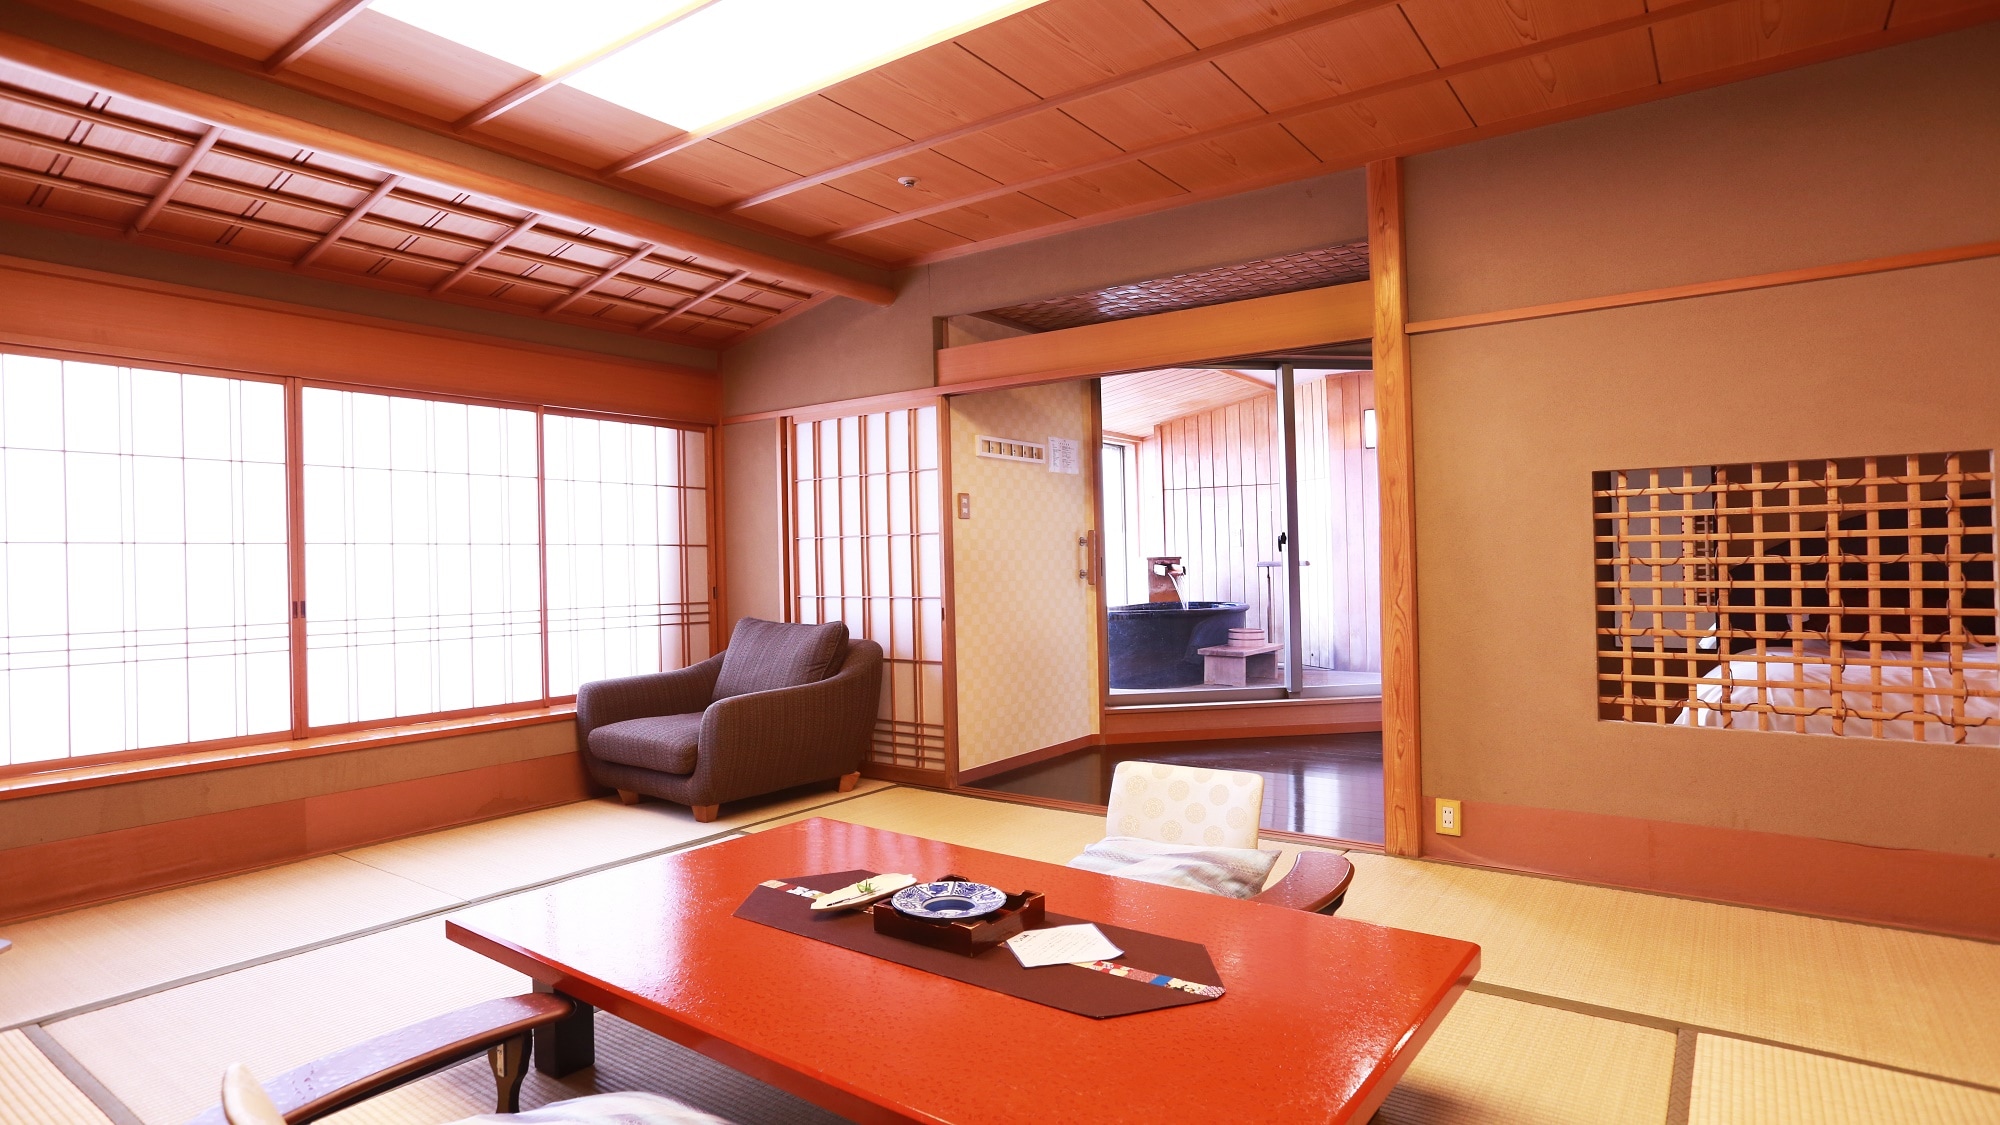 ห้องพักสไตล์ญี่ปุ่น-ตะวันตก พร้อมอ่างอาบน้ำโอเพ่นแอร์ 100%